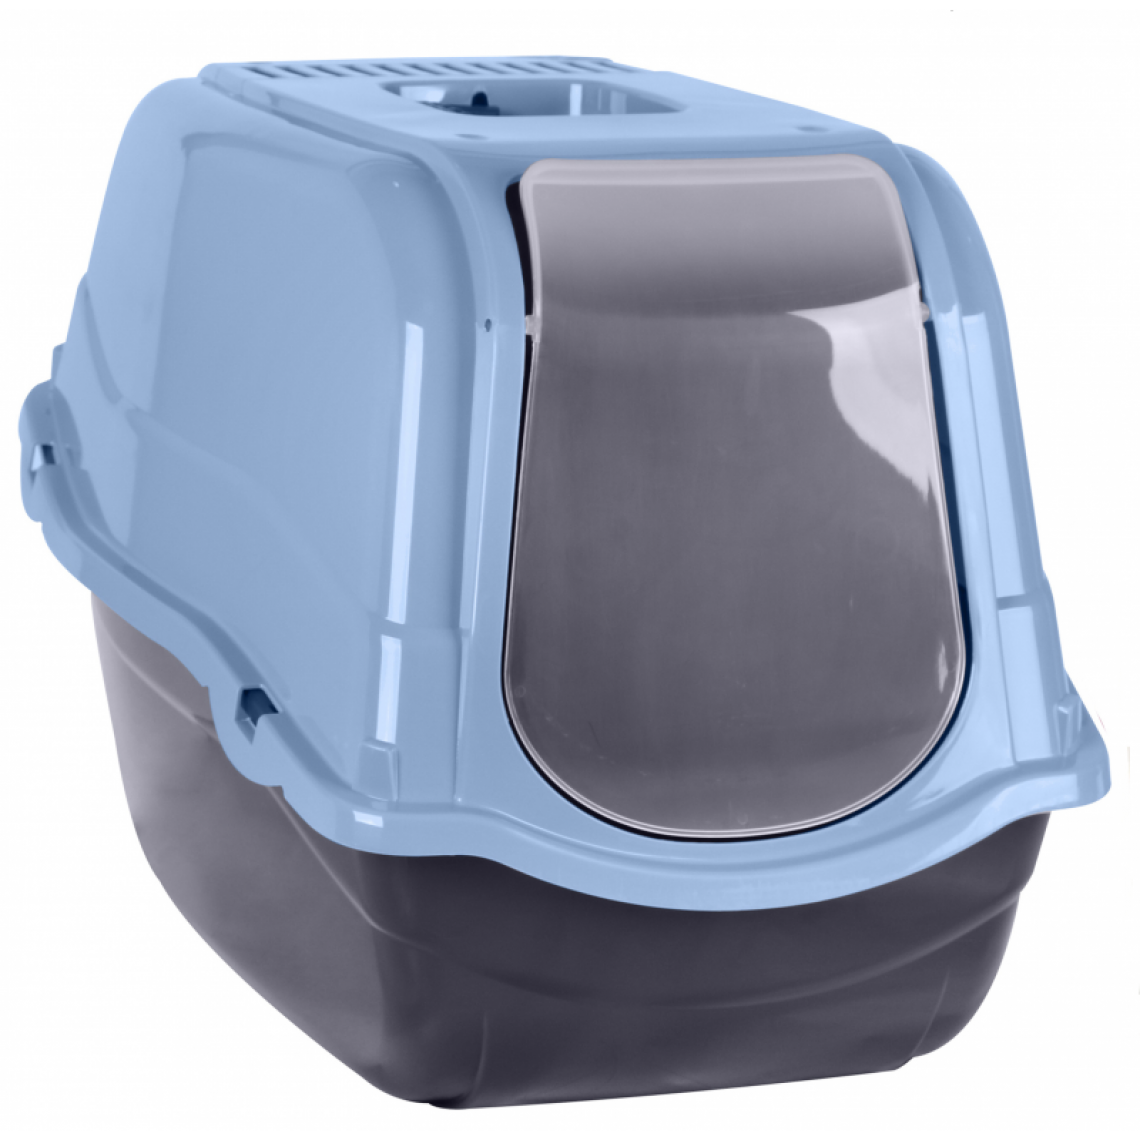 Ac-Deco - Maison de toilette pour chat - L 55 x l 40 x H 40 cm - Bleu - Equipement de transport pour chat